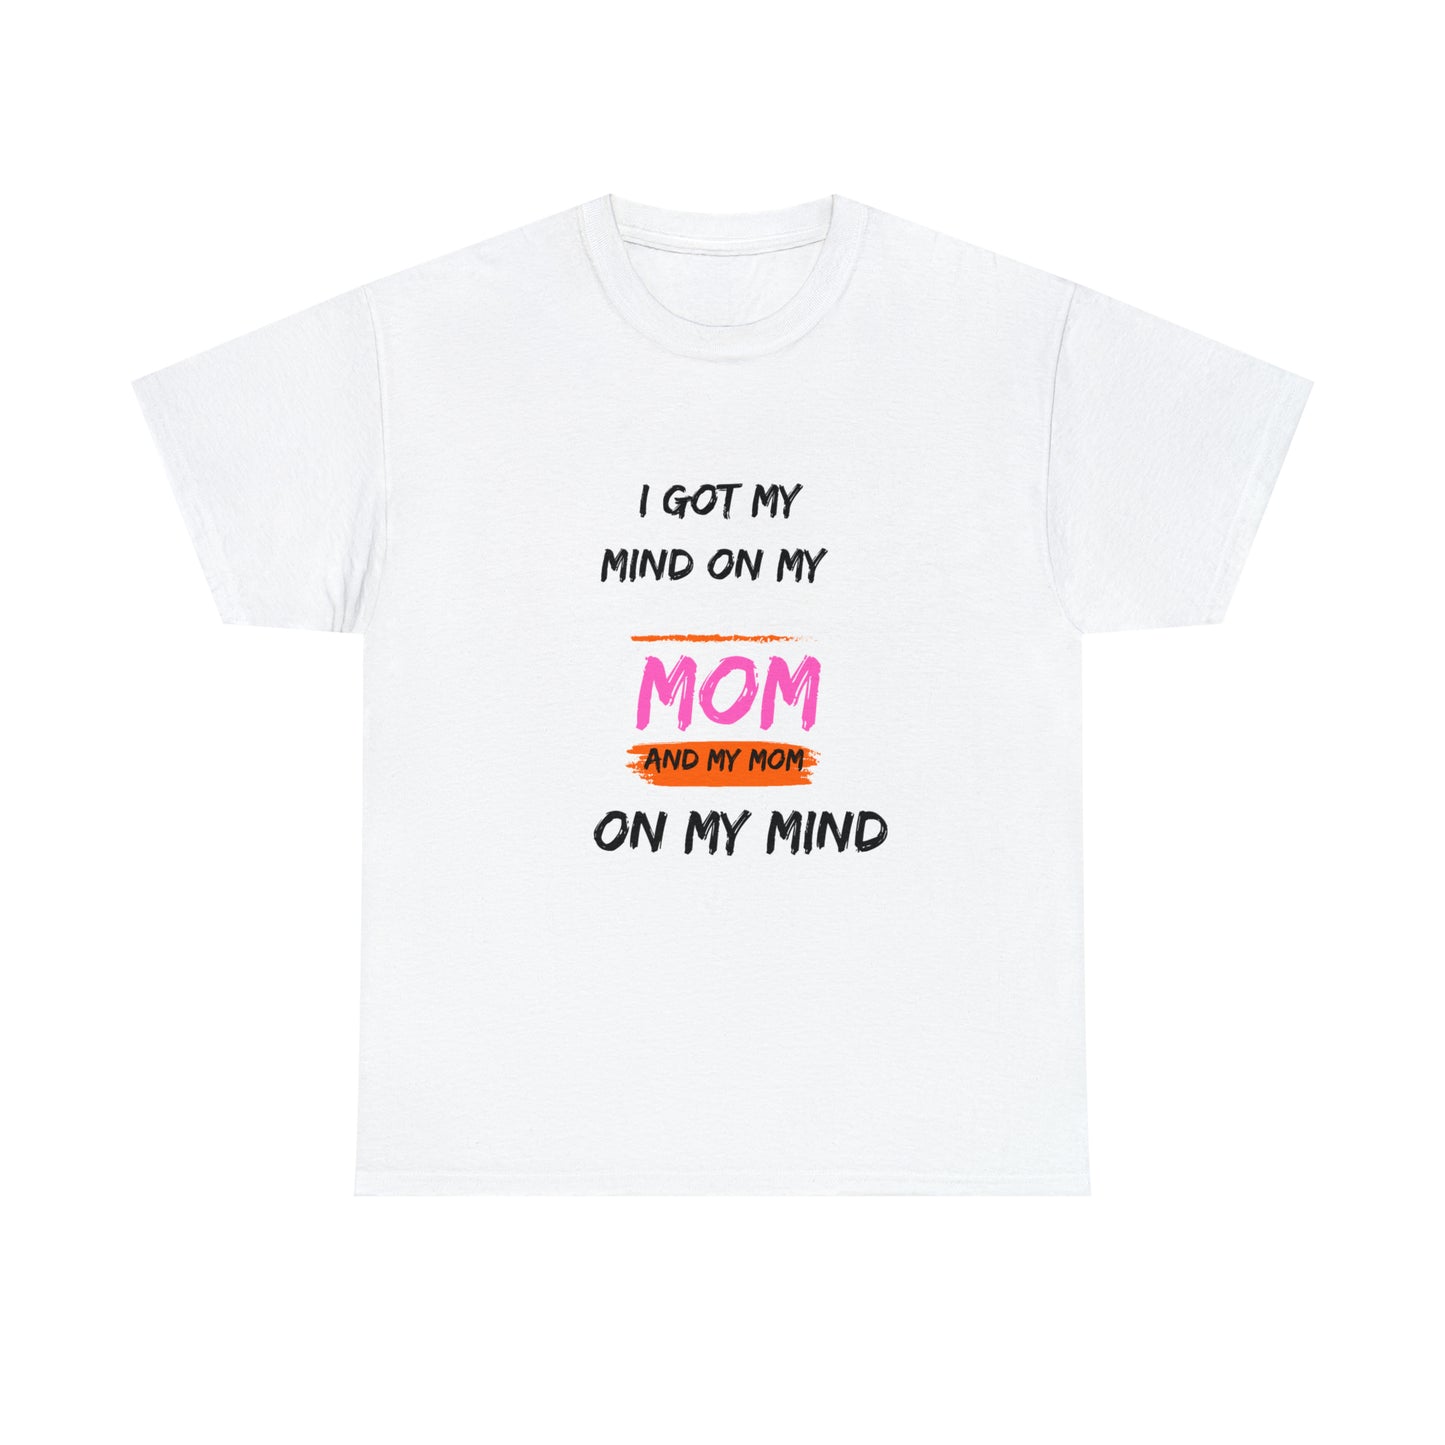 Mom on my mind tshirt Unisex Heavy Cotton Tee Mom day tshirt White customized tshirt for mom